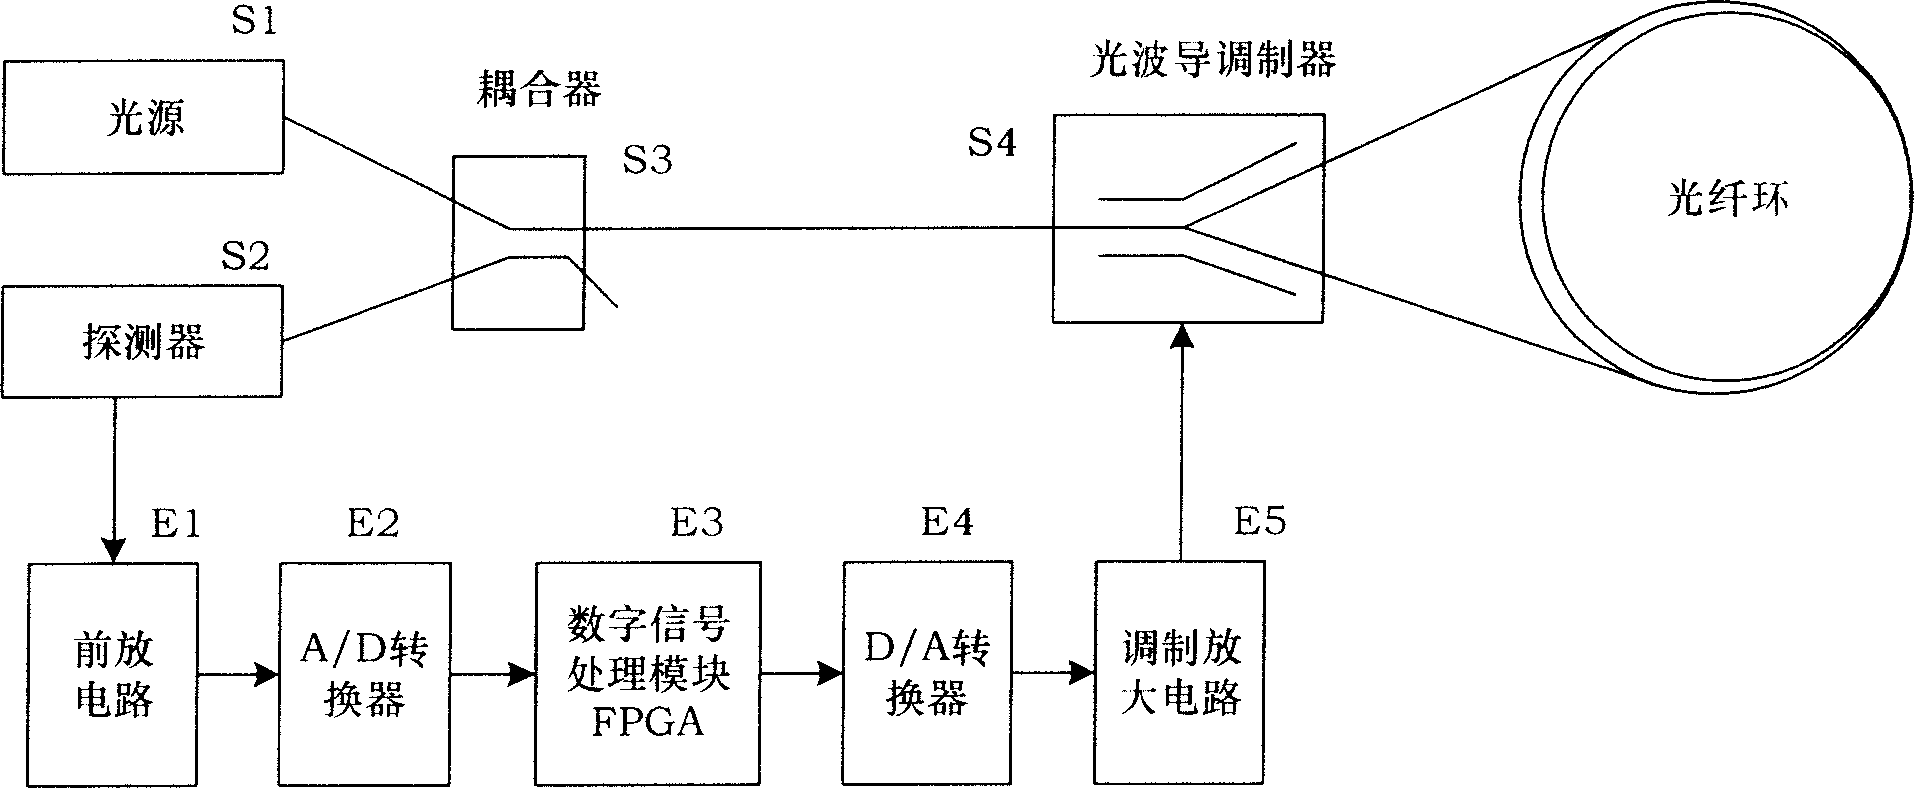 Digital modulation argument adjusting instrument of optical fibre gyro based on FPGA